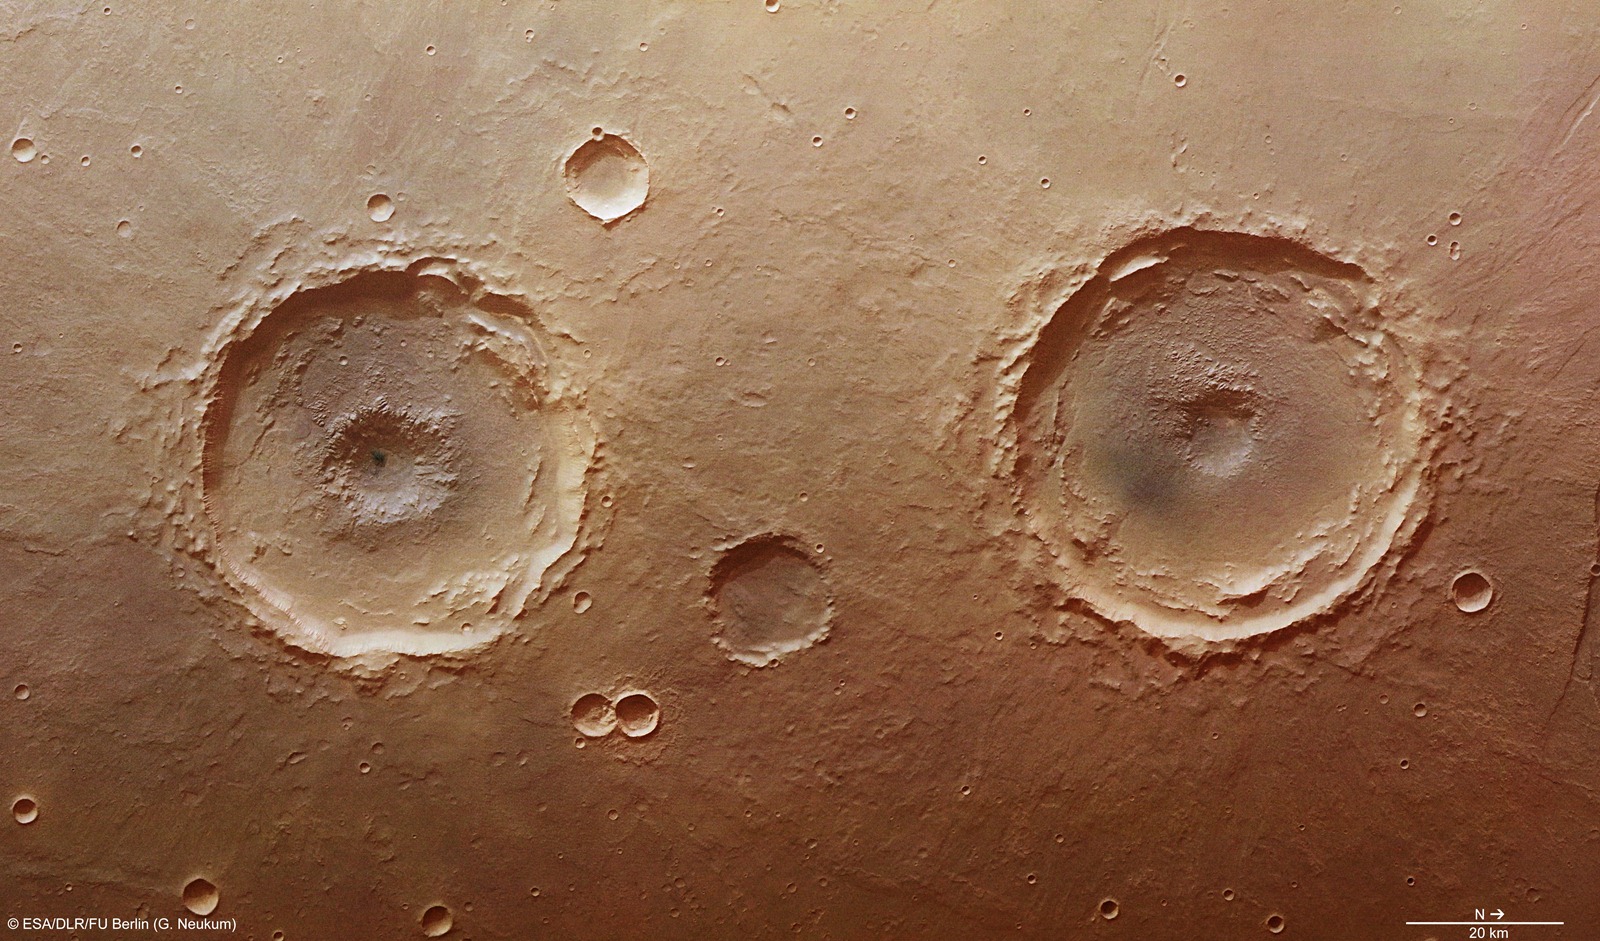 Comment se sont formées les pupilles de cette paire de cratères martiens ?